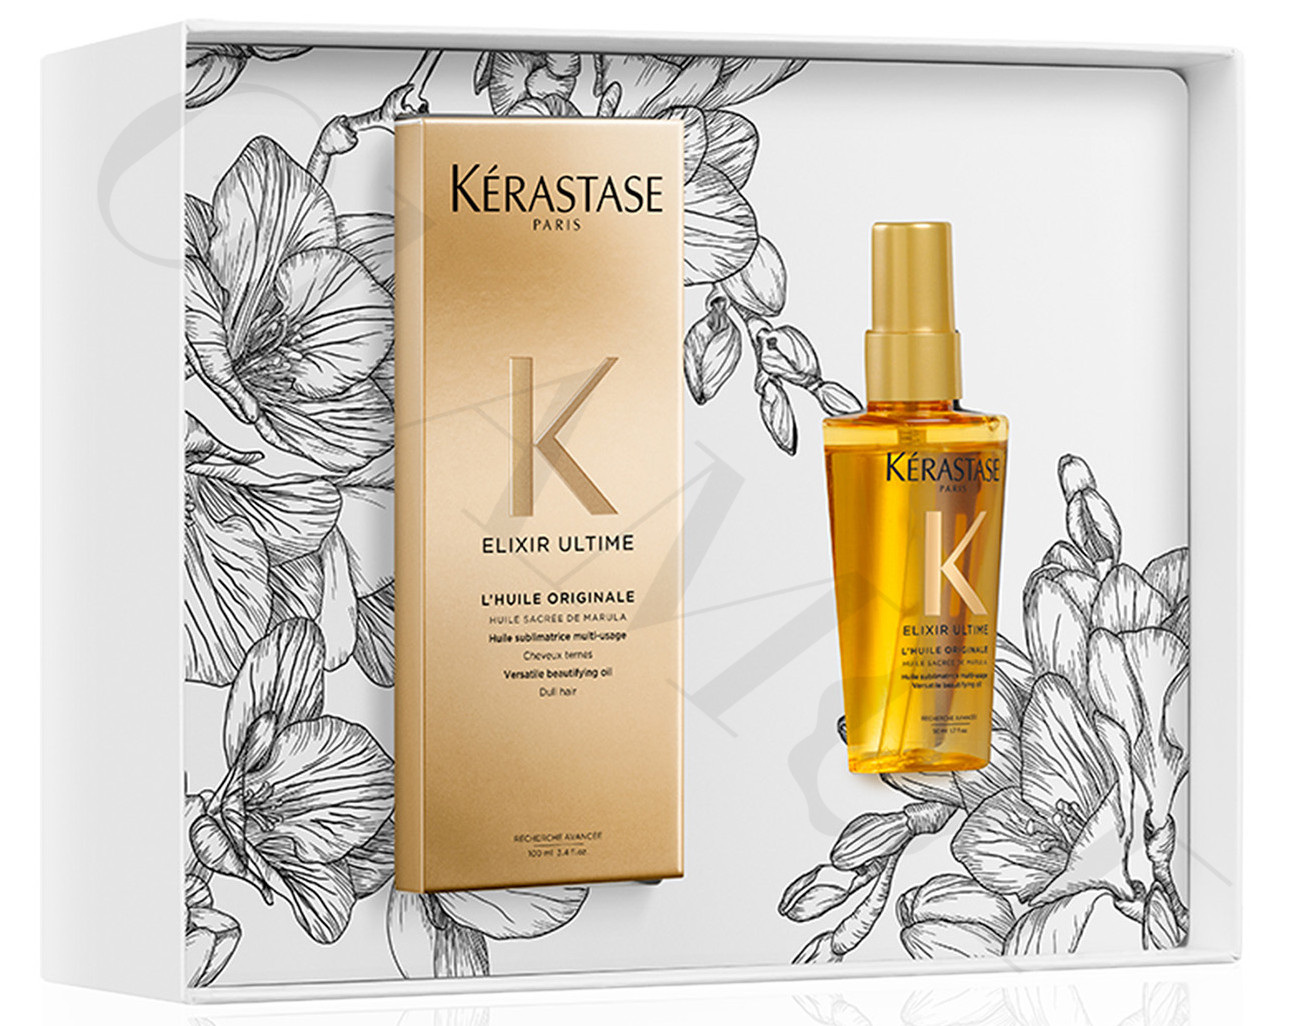 Kérastase Elixir Spring Oil gift set of luxury hair oils 